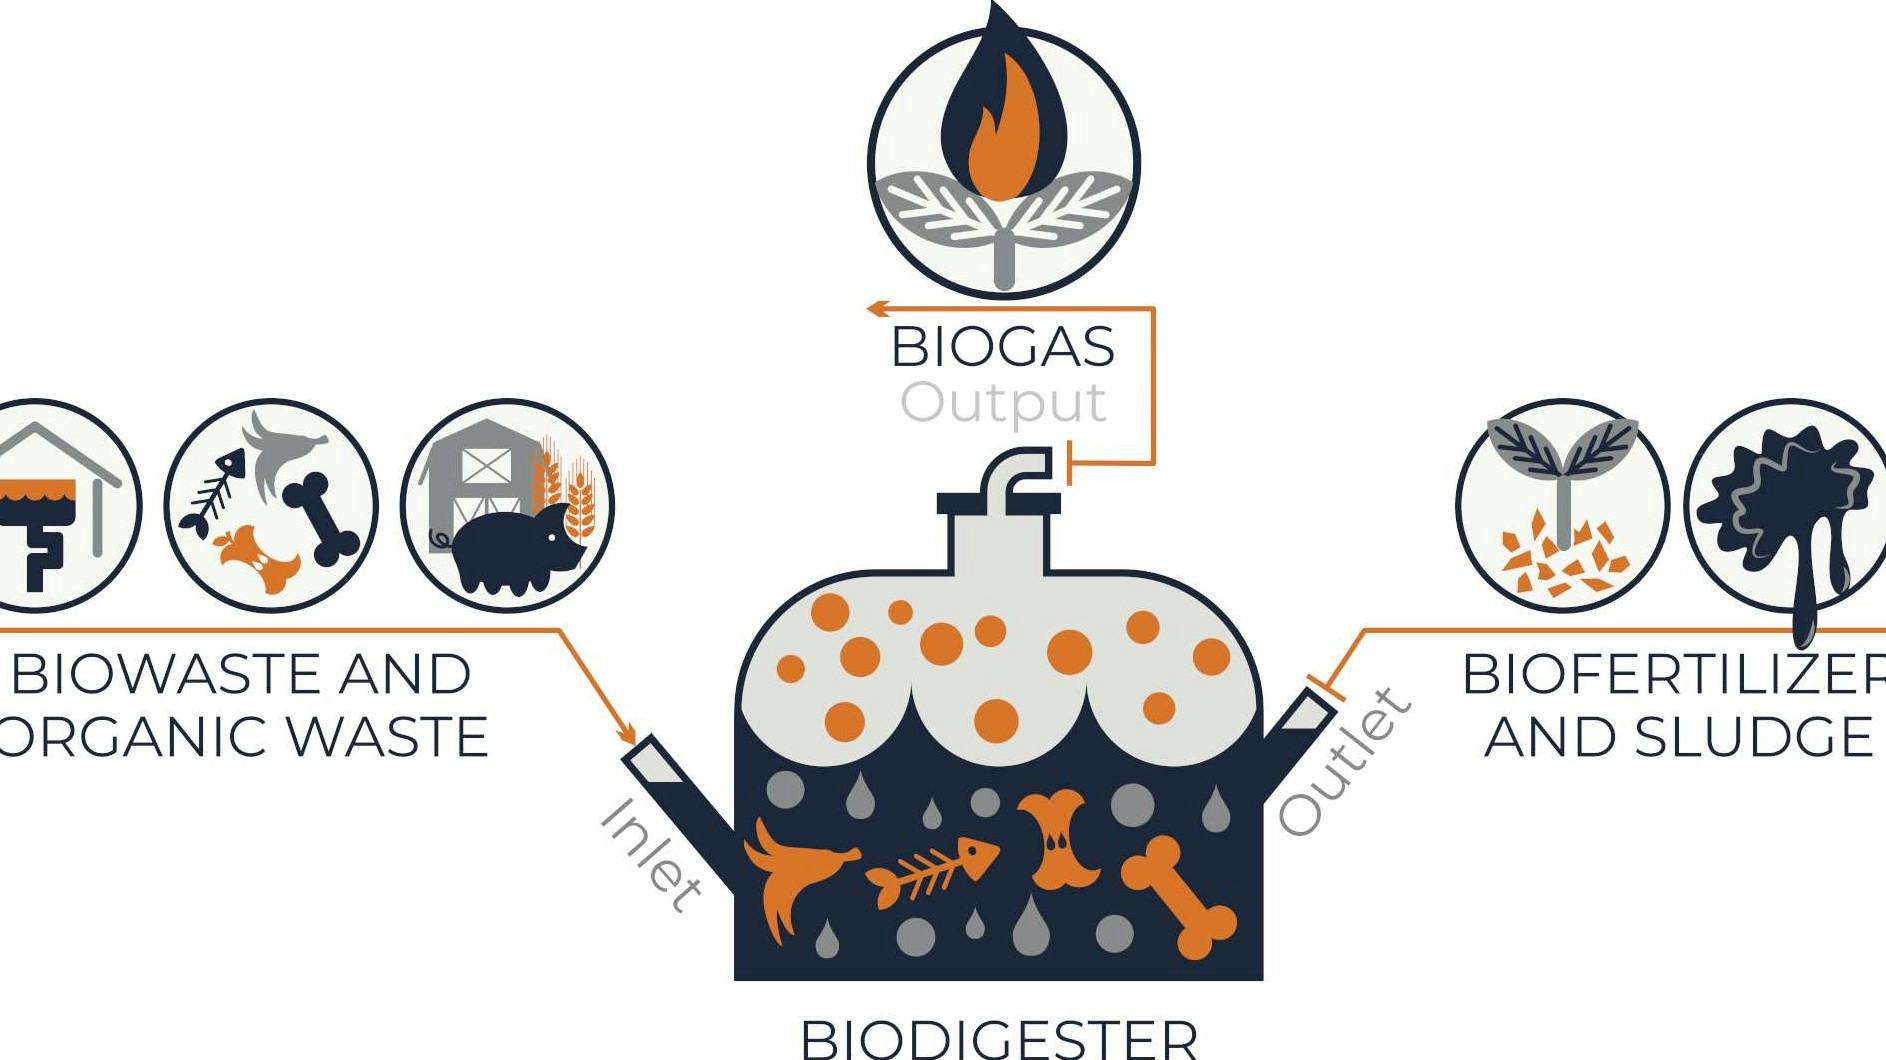 Bakken op biogas uit voedselafval dankzij compacte biovergister